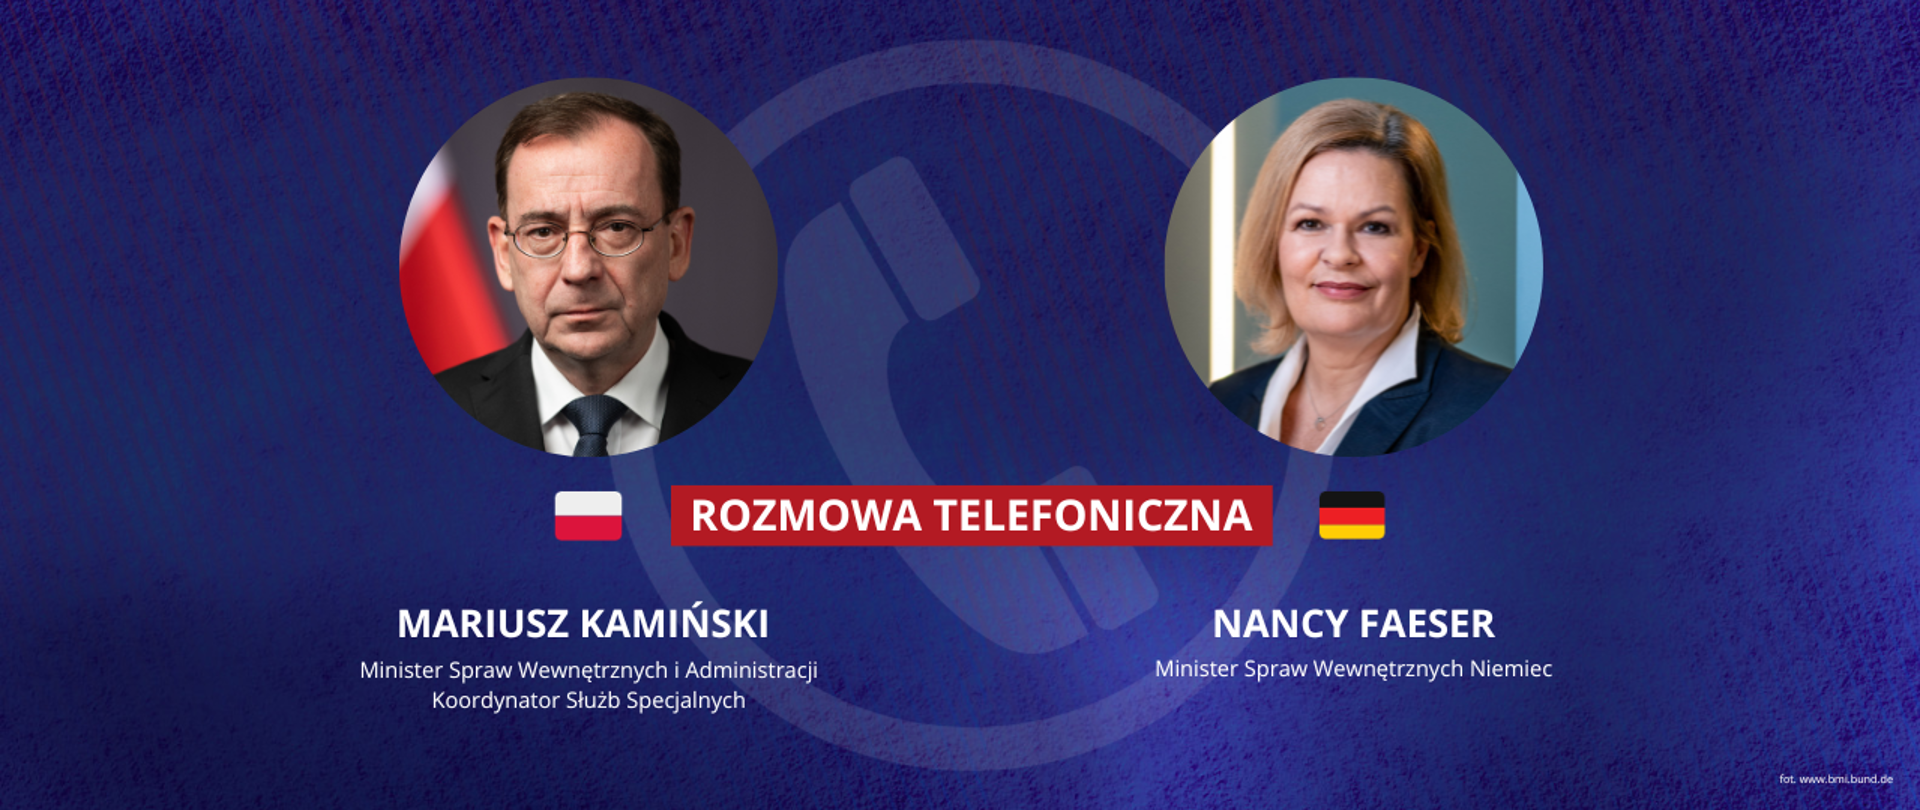 Grafika przedstawia informację o rozmowie telefonicznej między Mariuszem Kamińskim, ministrem spraw wewnętrznych i administracji a Nancy Feaser, ministrem spraw wewnętrznych Niemiec. Na grafice widnieją zdjęcia portretowe ministrów.